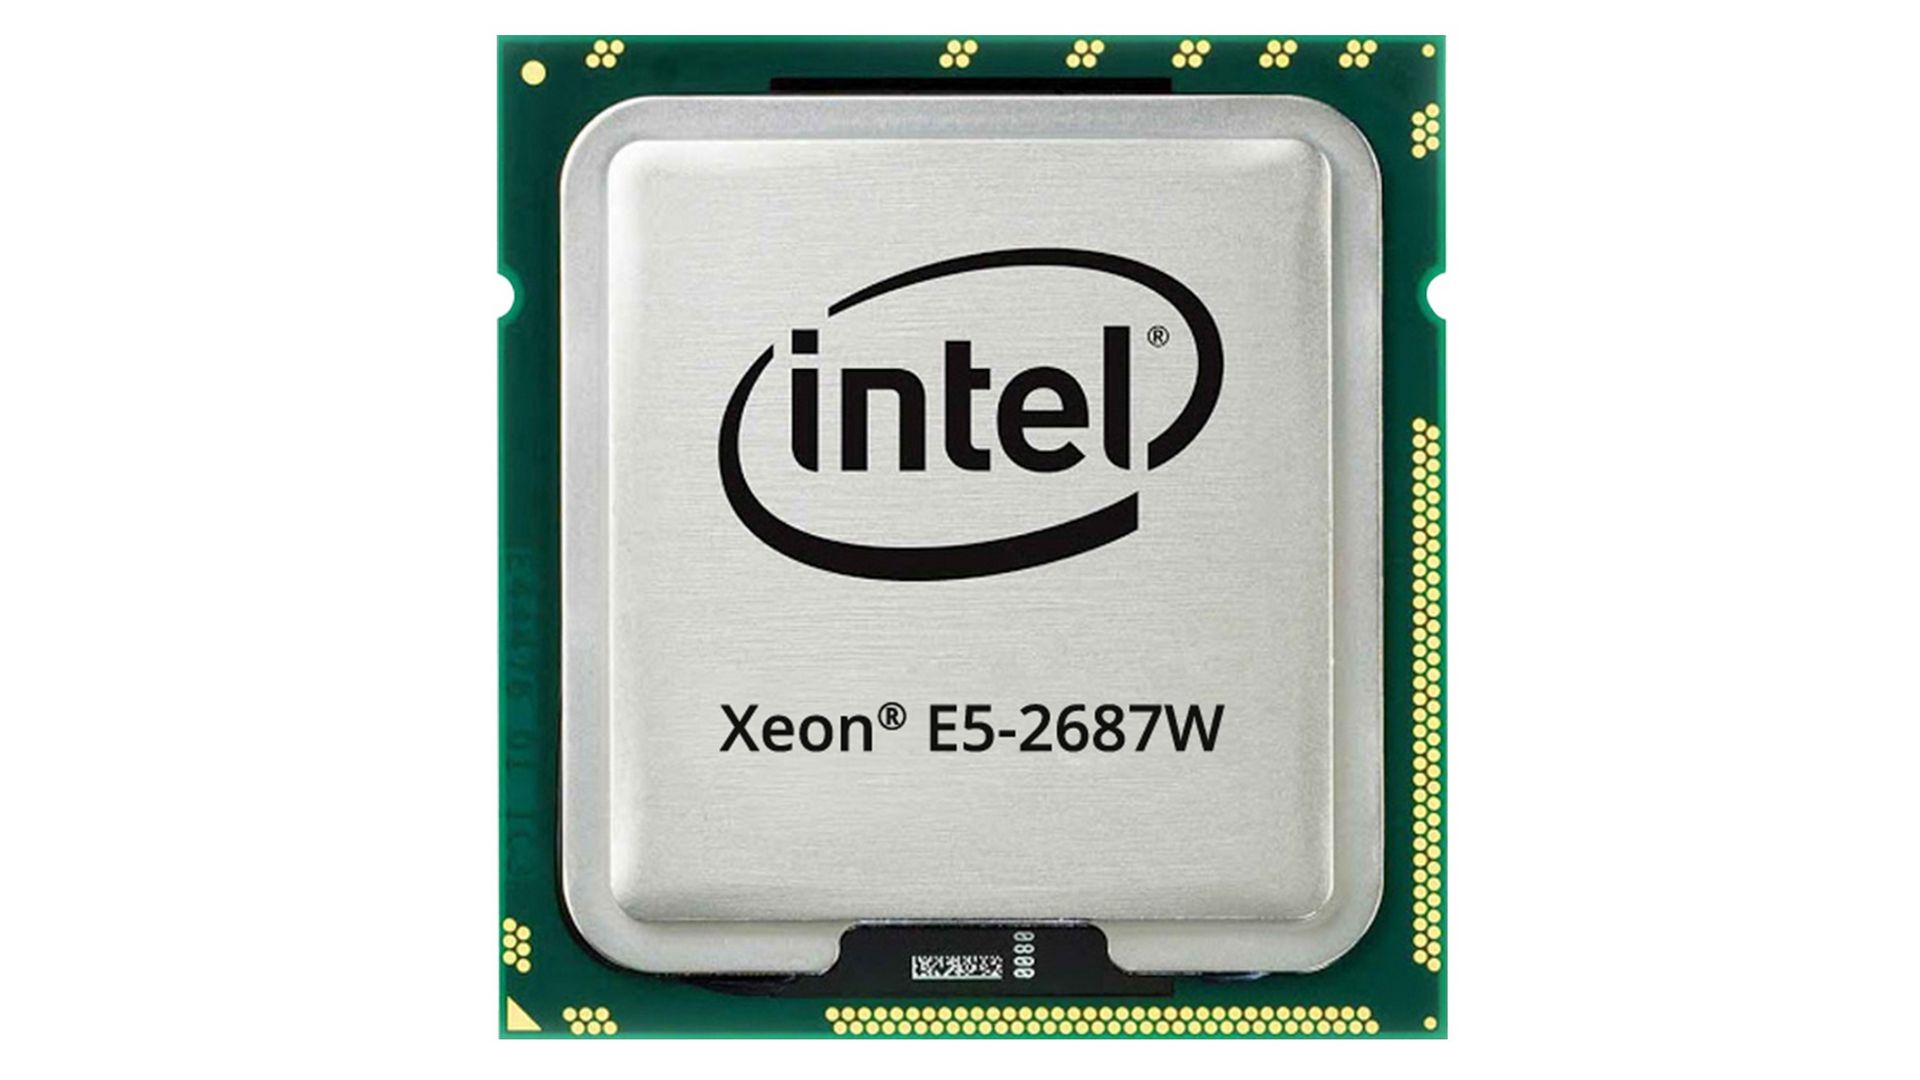 CPU Intel Xeon E5-2687W (3.1GHz Turbo Up To 3.8GHz, 8 nhân 16 luồng, 20MB Cache, LGA 2011) 